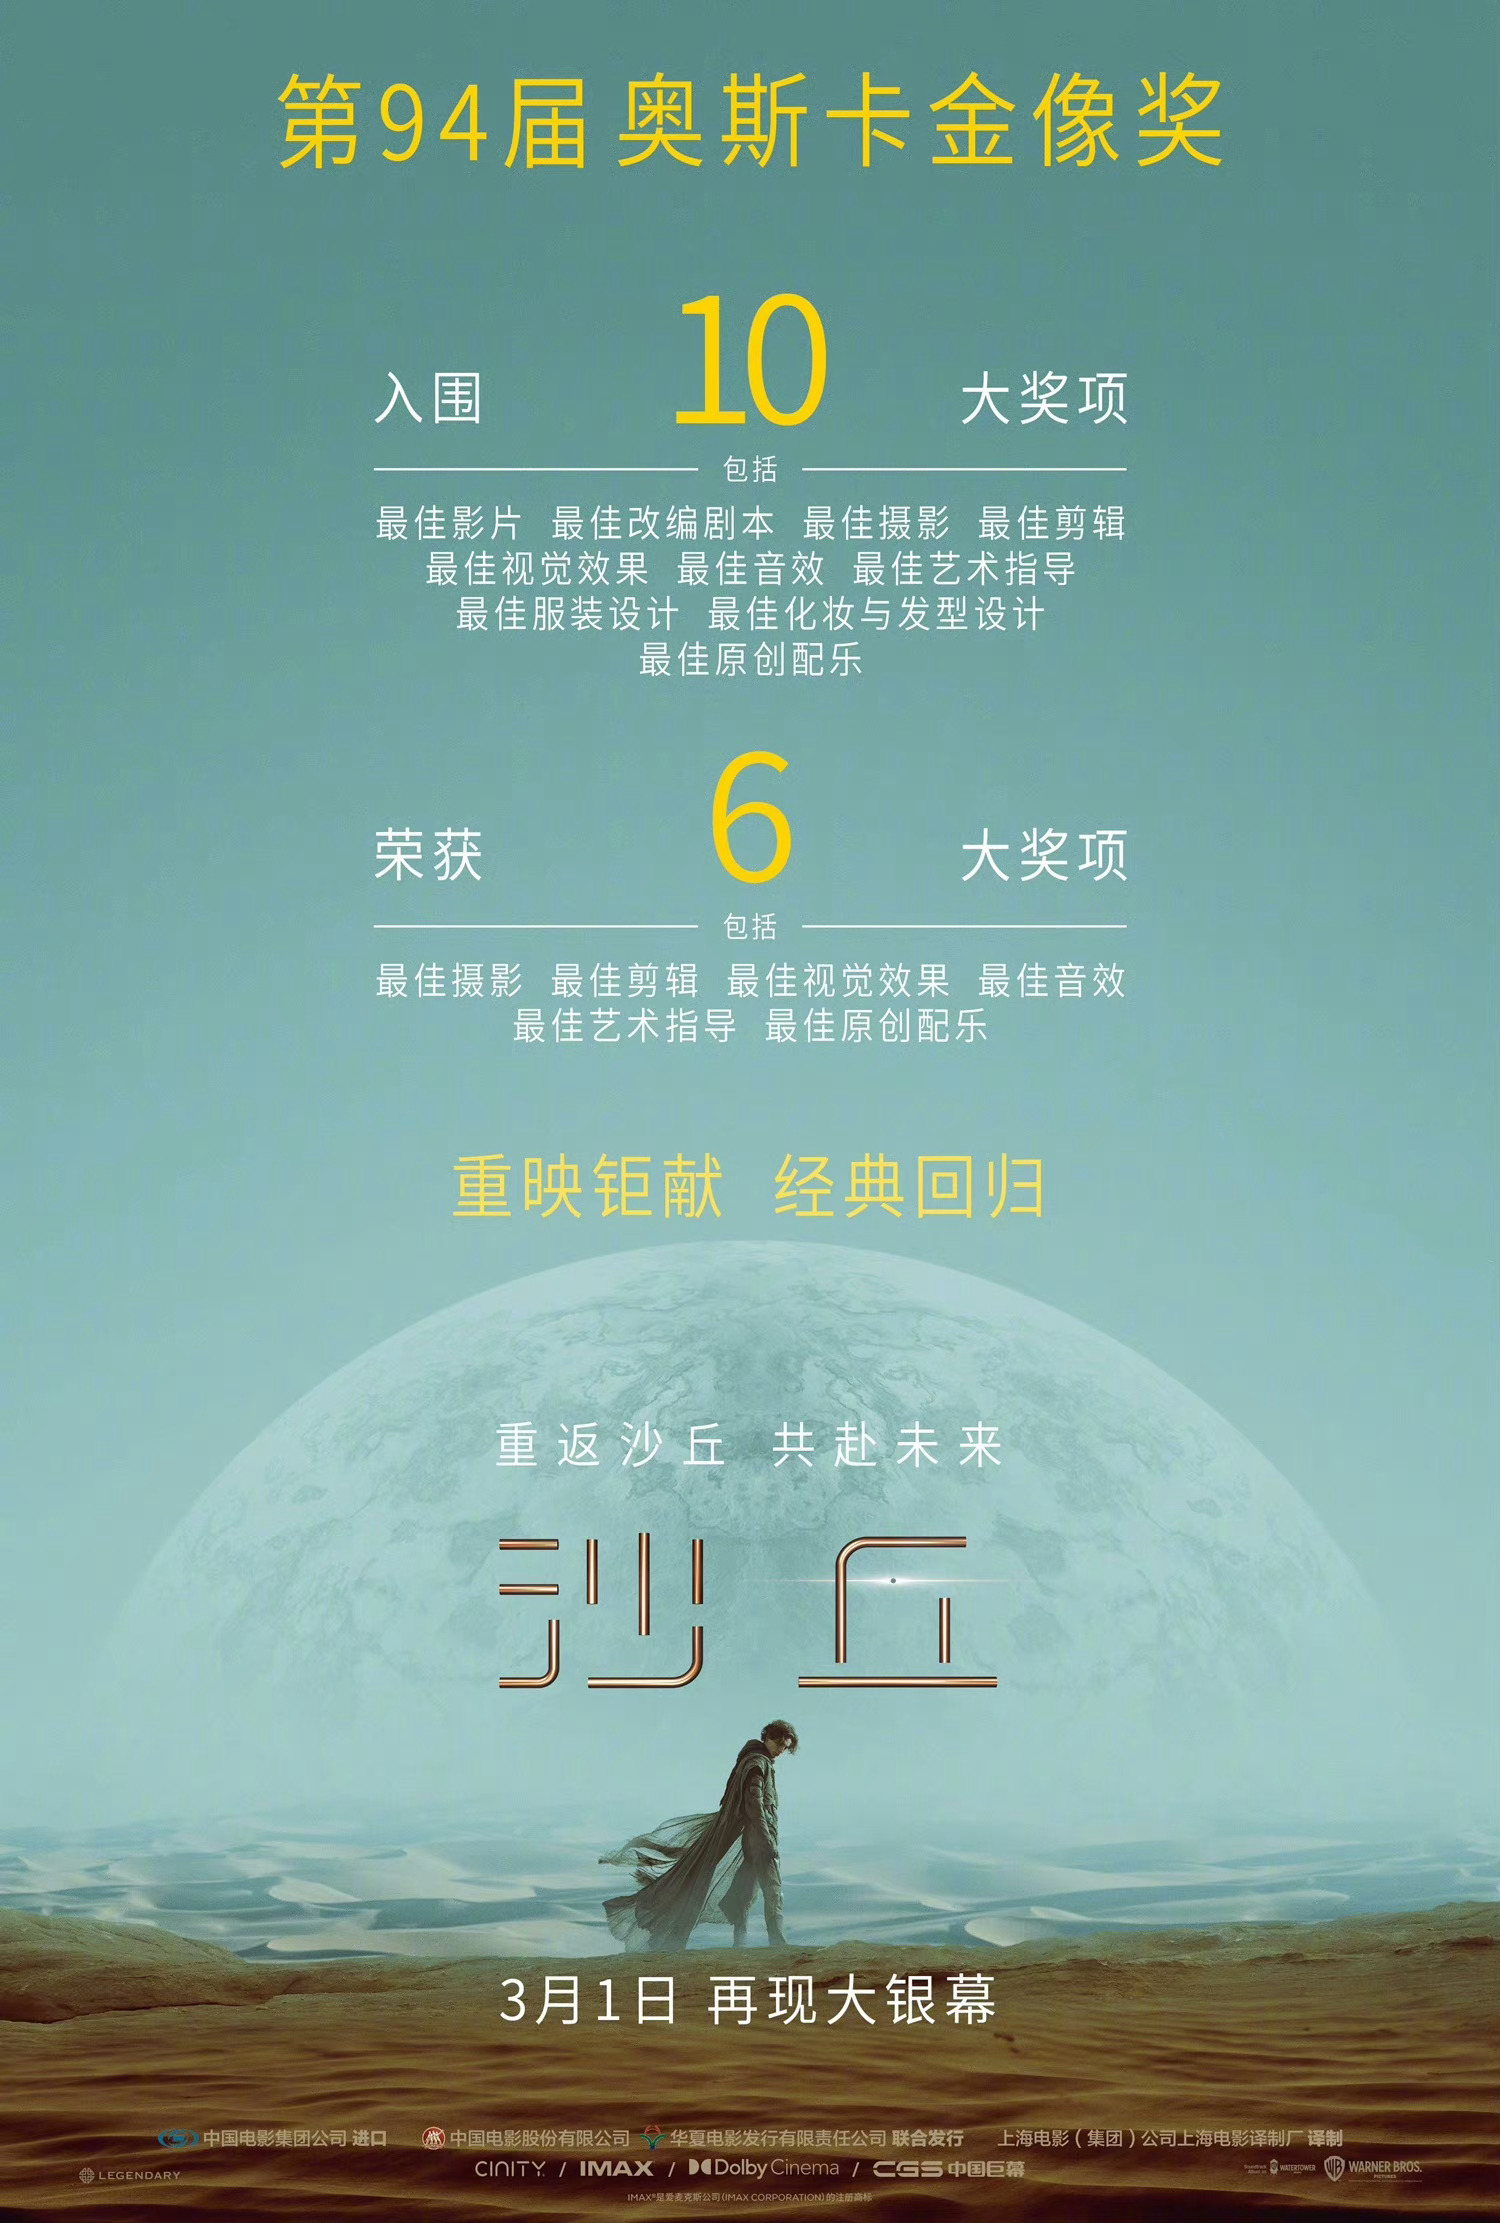 《沙丘》影戏将于3月1日正在中国本天重映